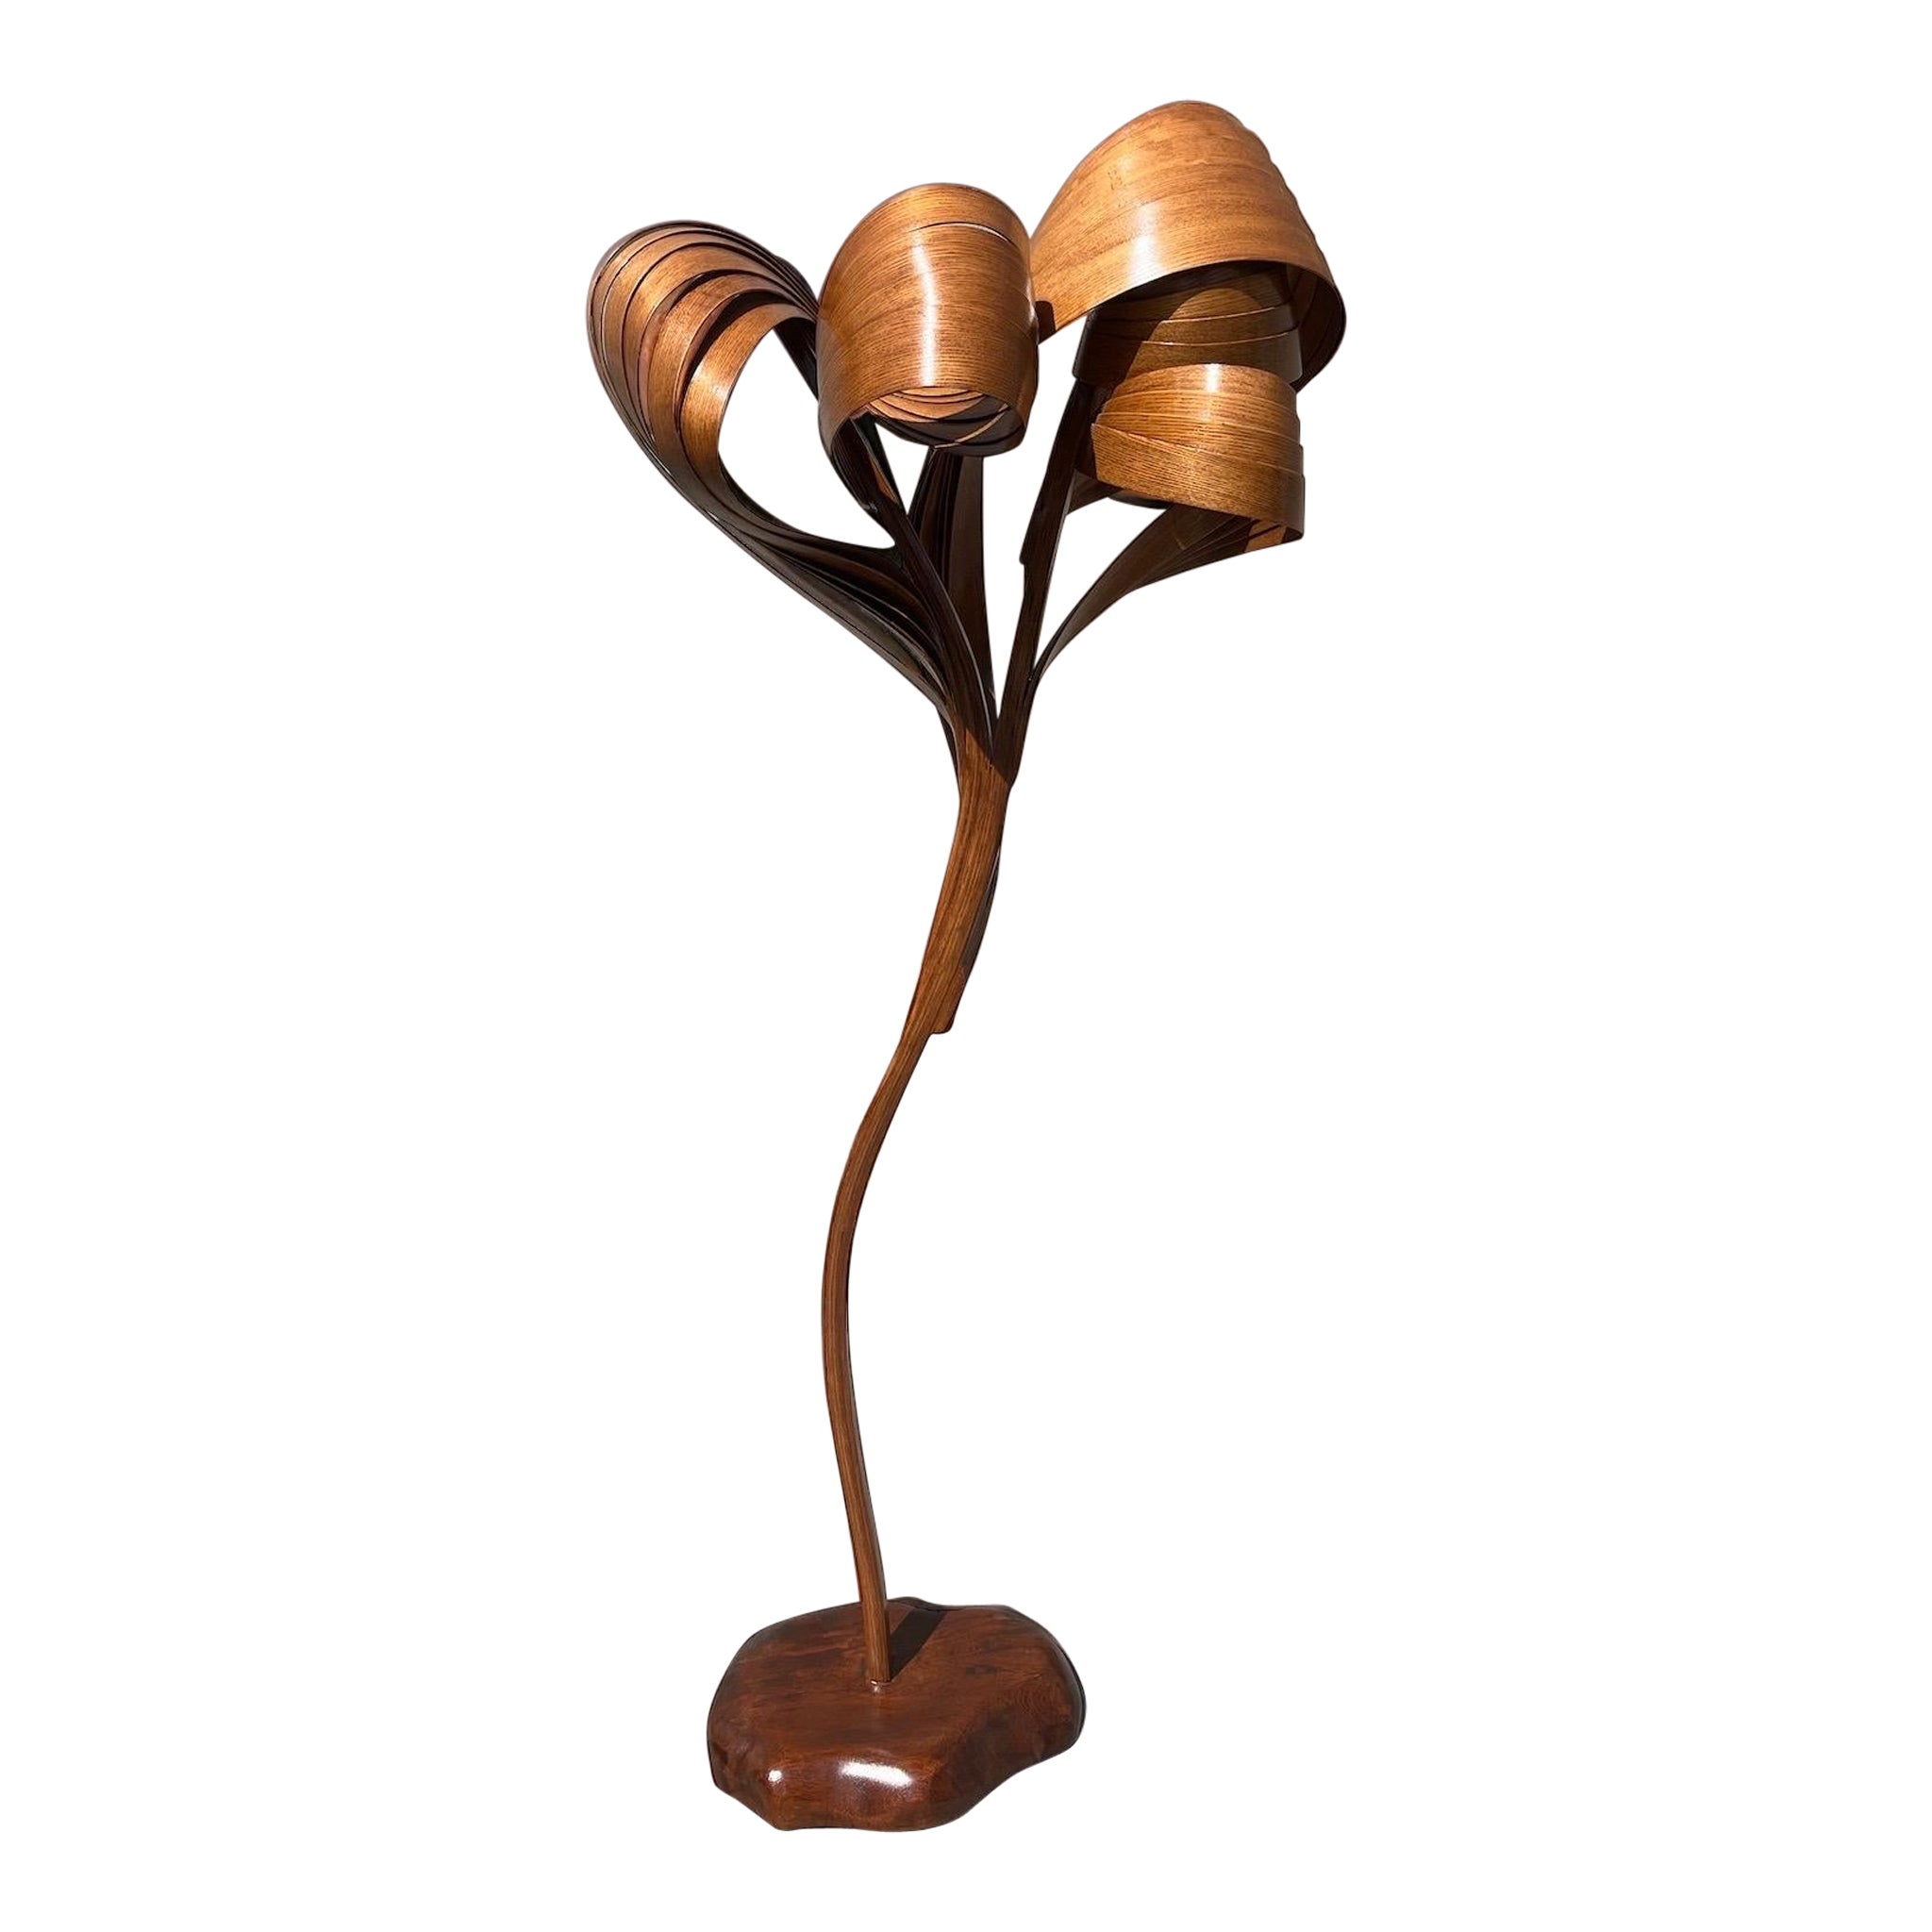 Stehlampe Nr. 5 – Vrksa Serie – Stehlampe aus gebogenem Holz in Eschenholz